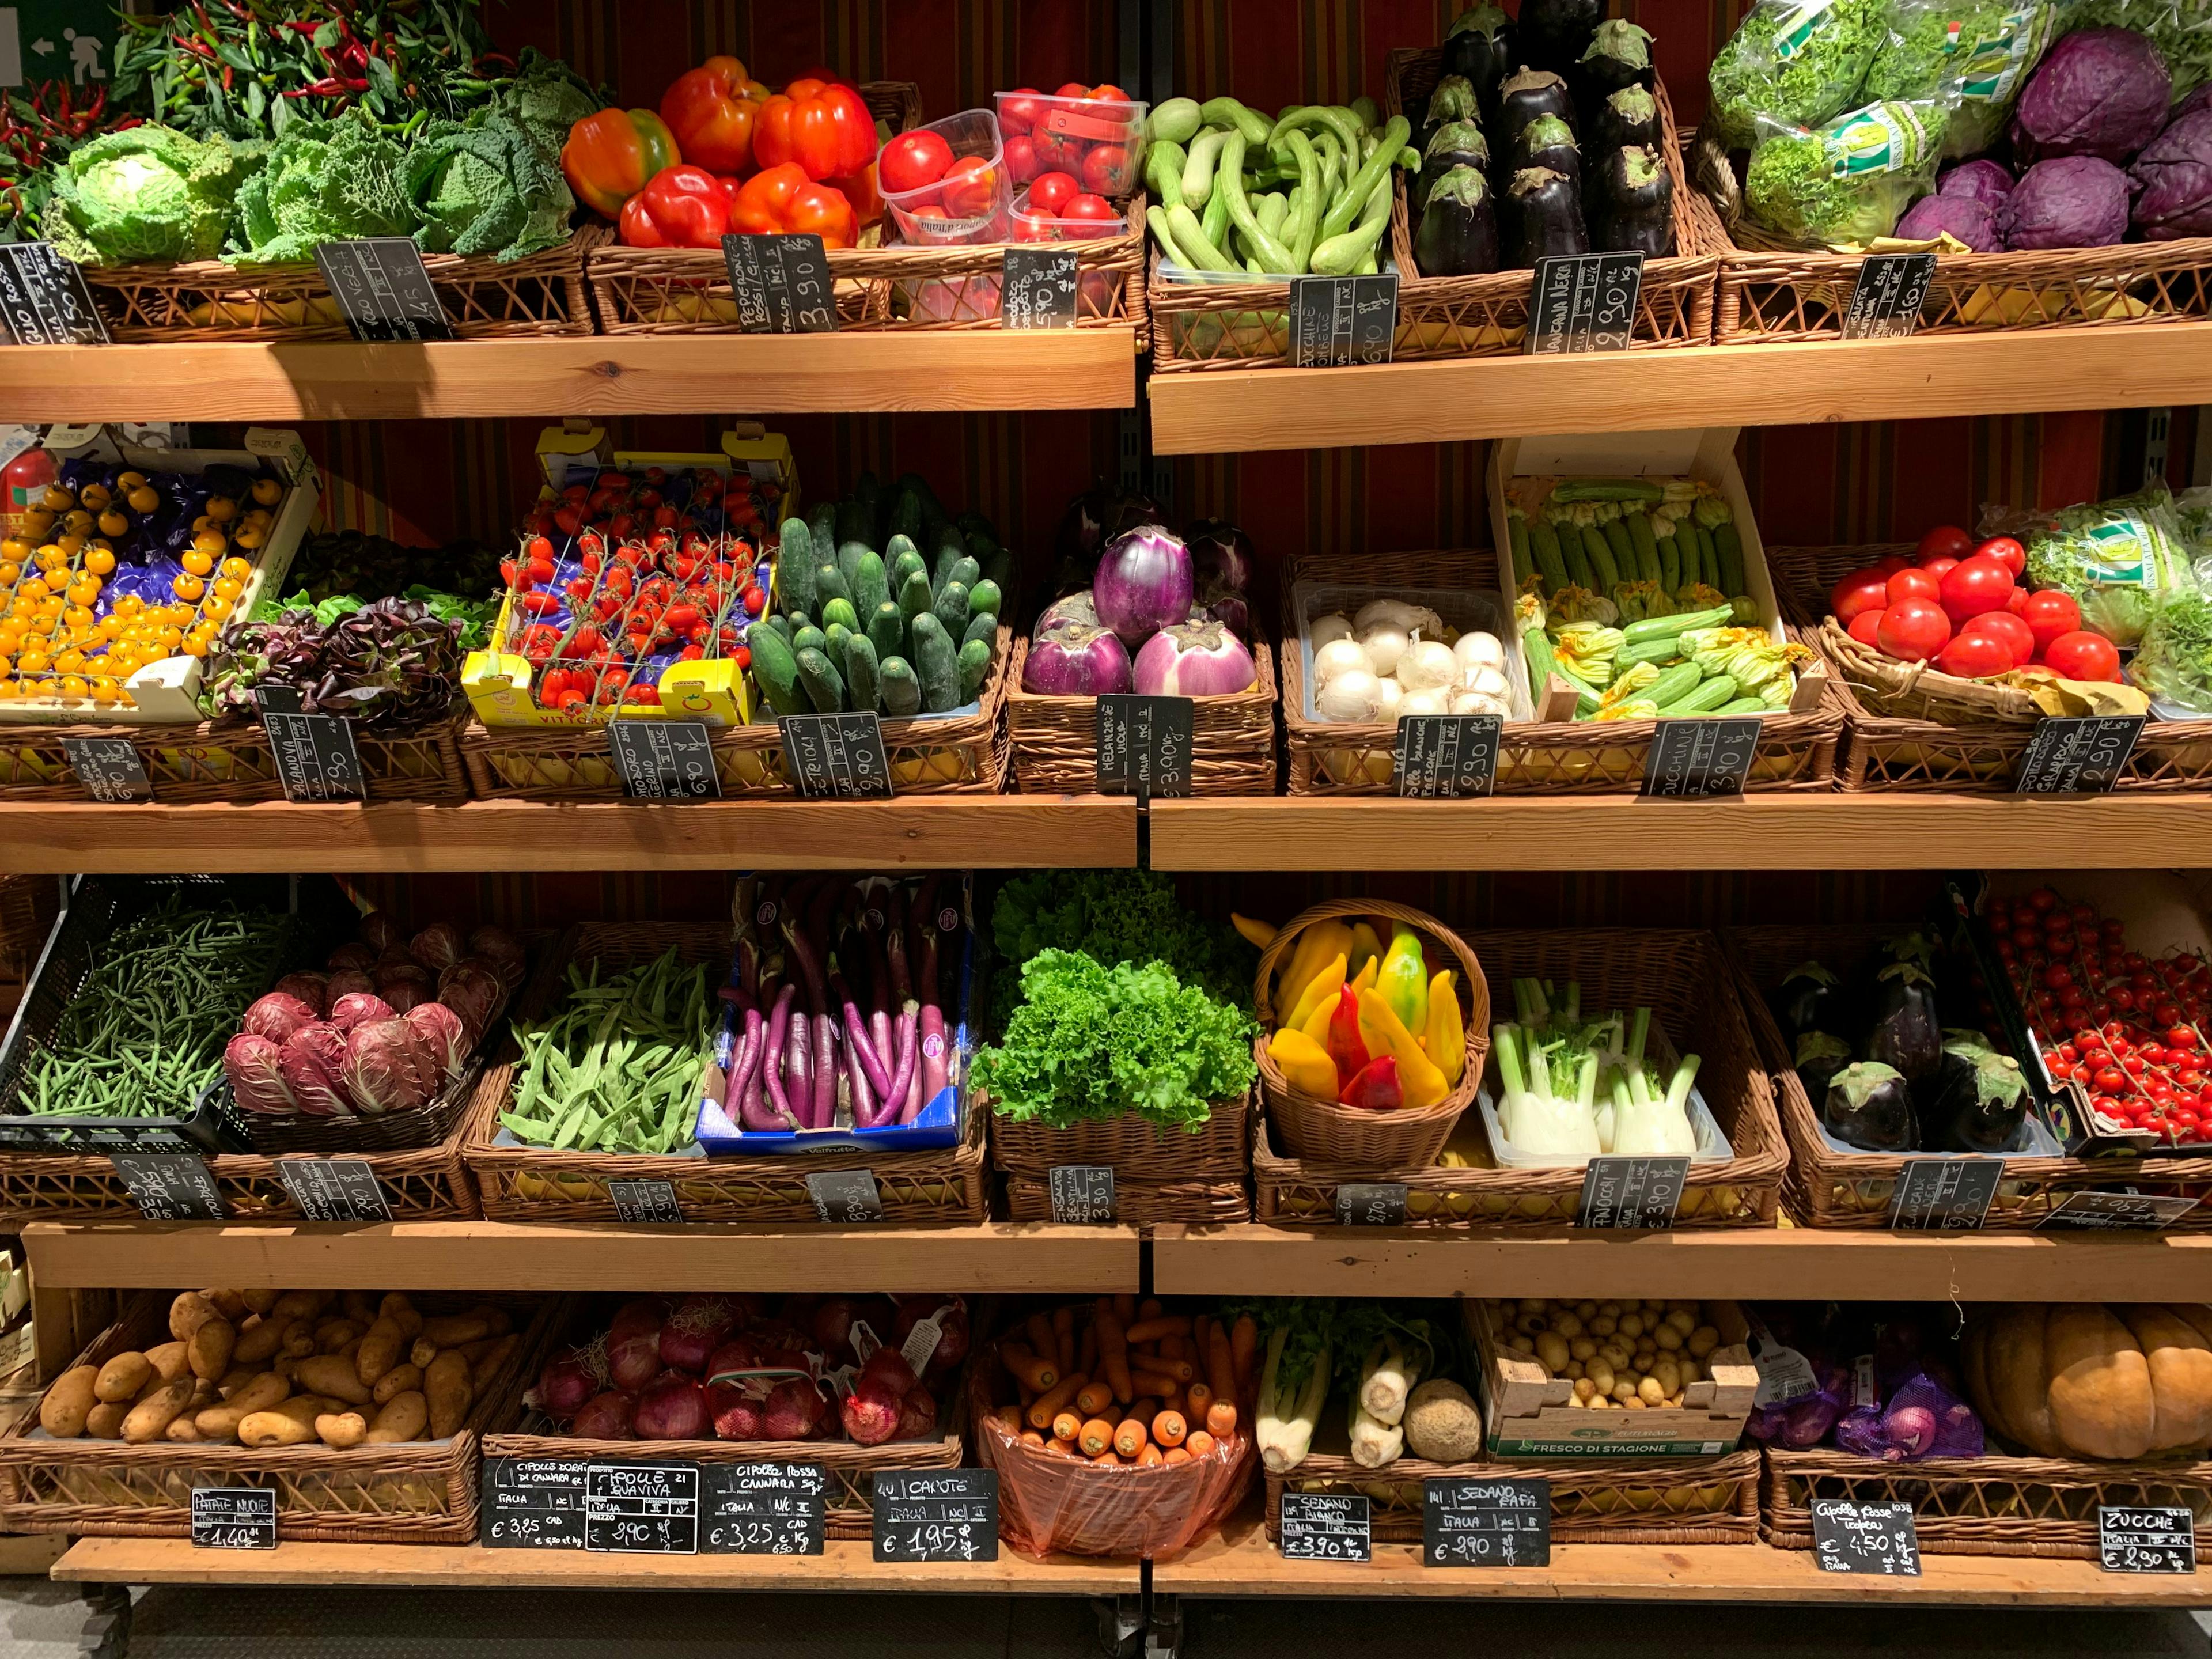 Vegetables in supermarket shelf